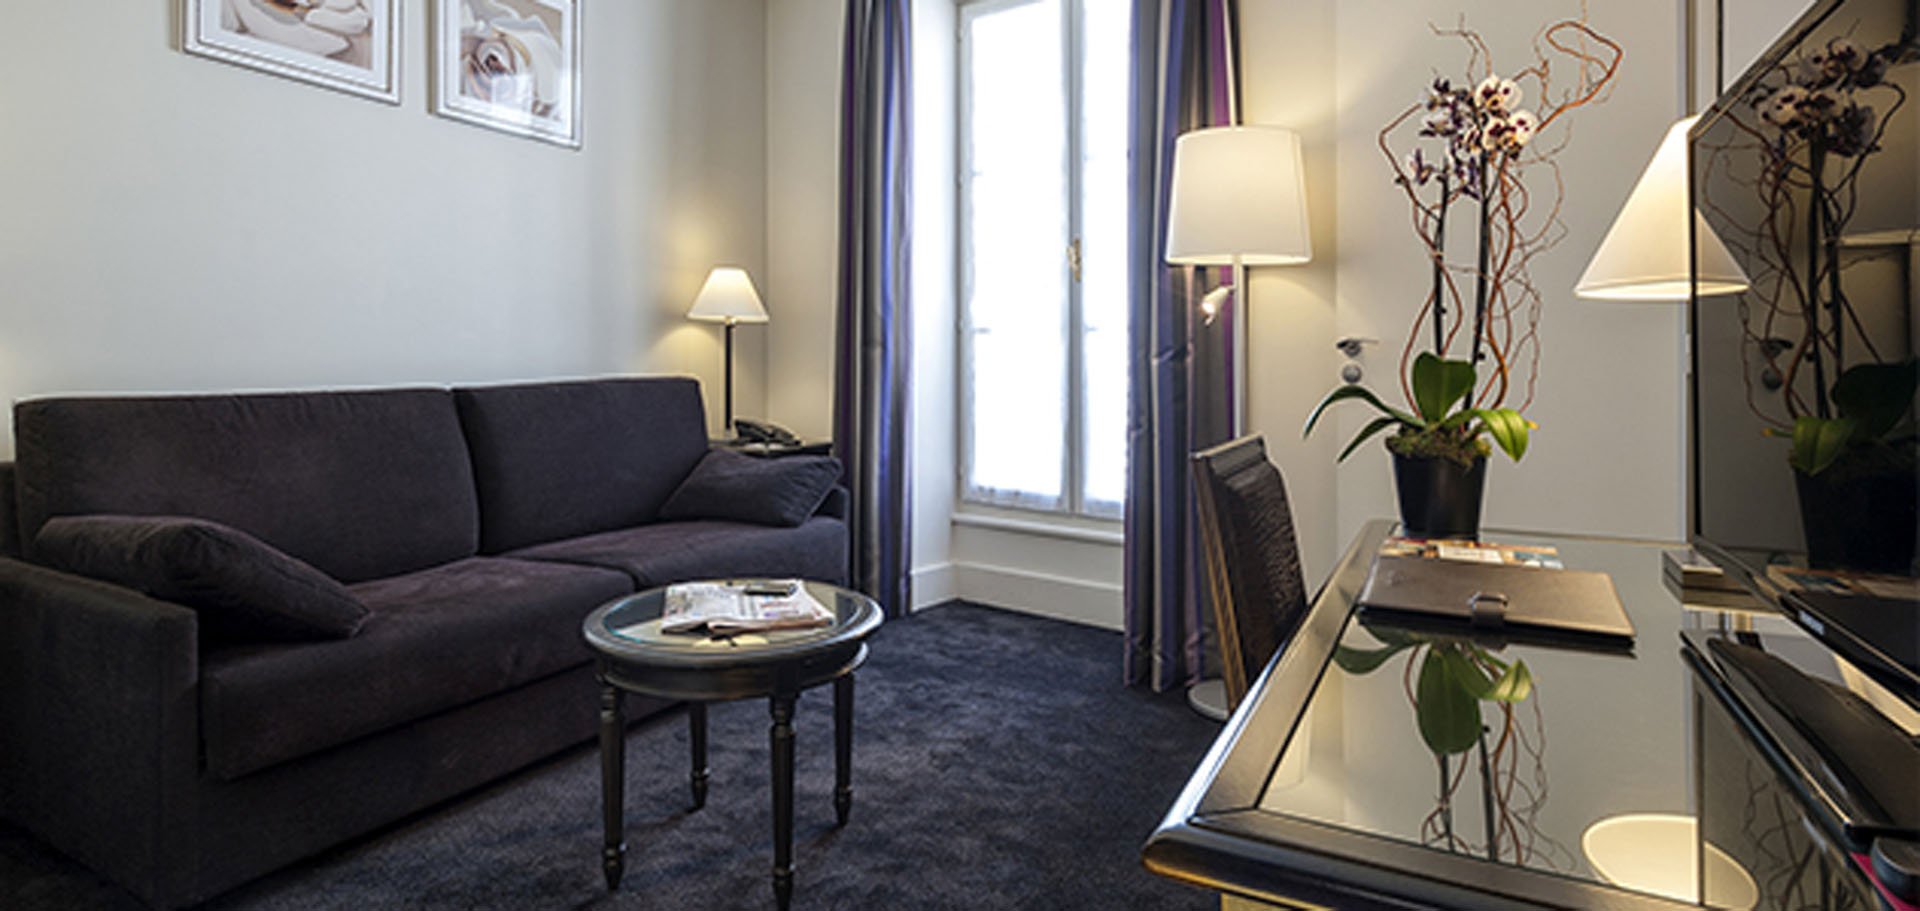 Suite, Hotel Paris rue Saint Honoré, 4 star hotel Paris Louvre Vendôme, 4 star hotel Saint Honoré